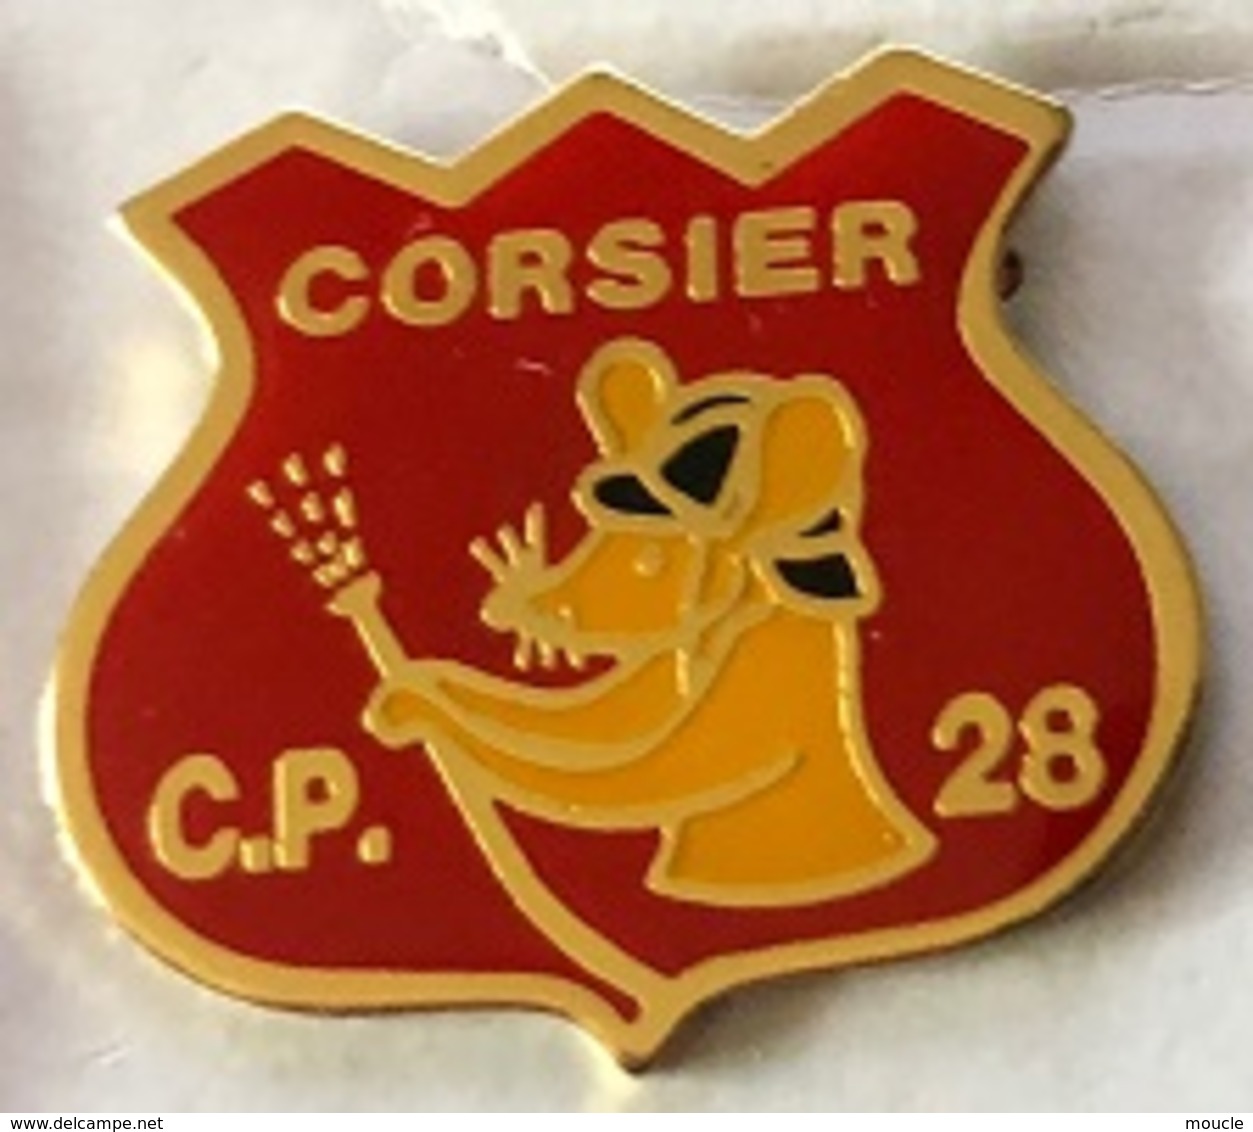 SAPEURS POMPIERS - CORSIER - GENEVE - C.P. 28 - SOURIS - RAT - GENEVA - GENF - GINERVA - SUISSE - SCHWEIZ-   (25) - Firemen